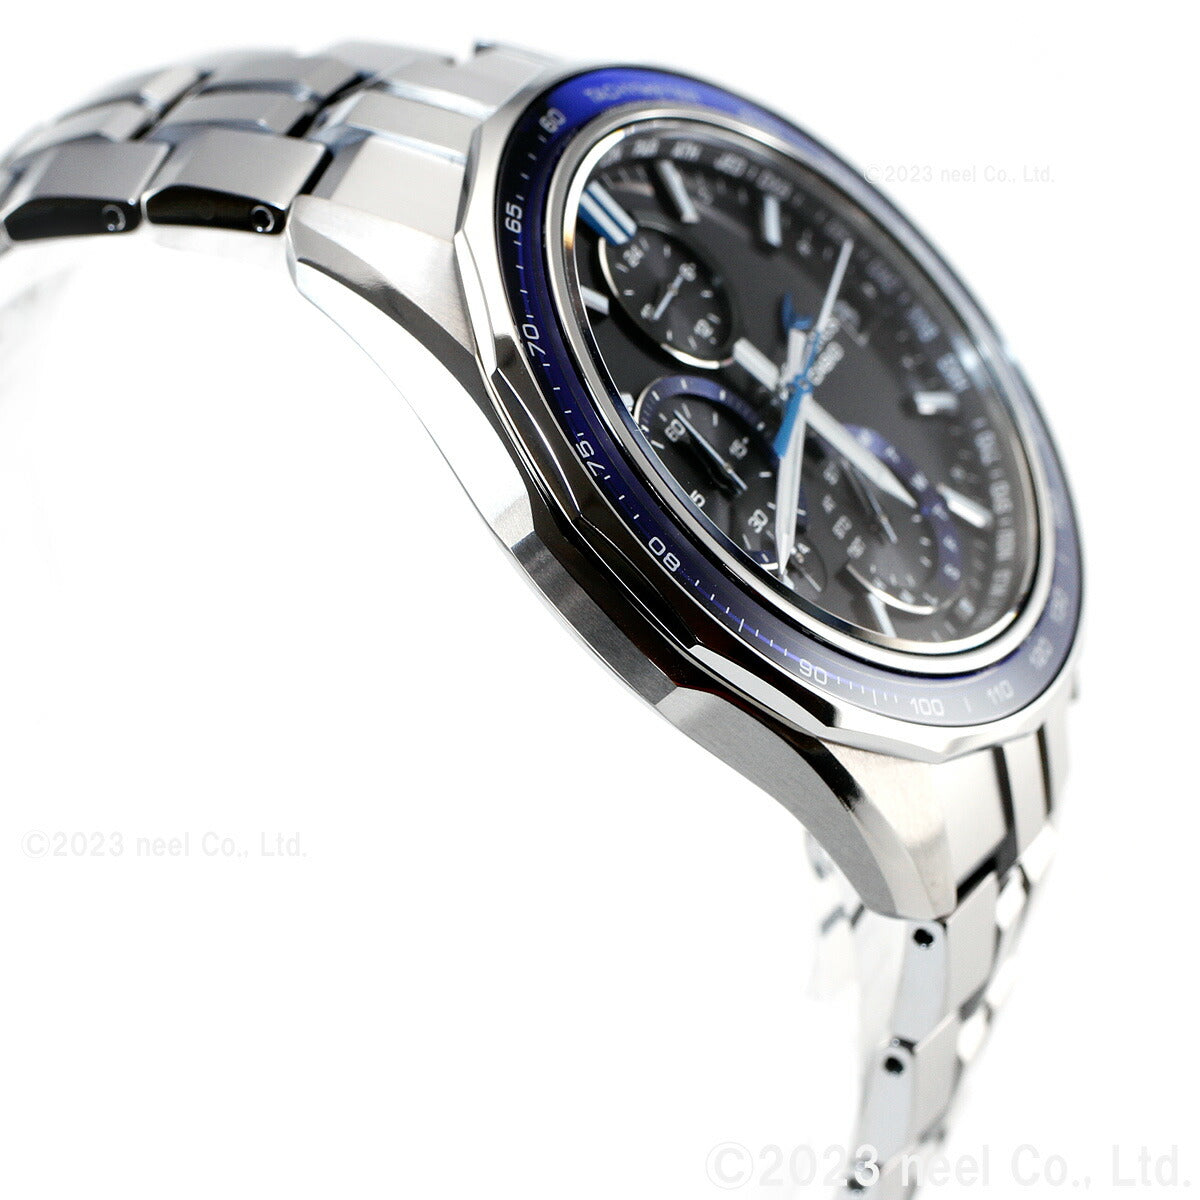 オシアナス Manta マンタ 限定モデル OCW-S7000-1AJF メンズ 腕時計 電波ソーラー タフソーラー CASIO カシオ 日本製 Premium Production Line